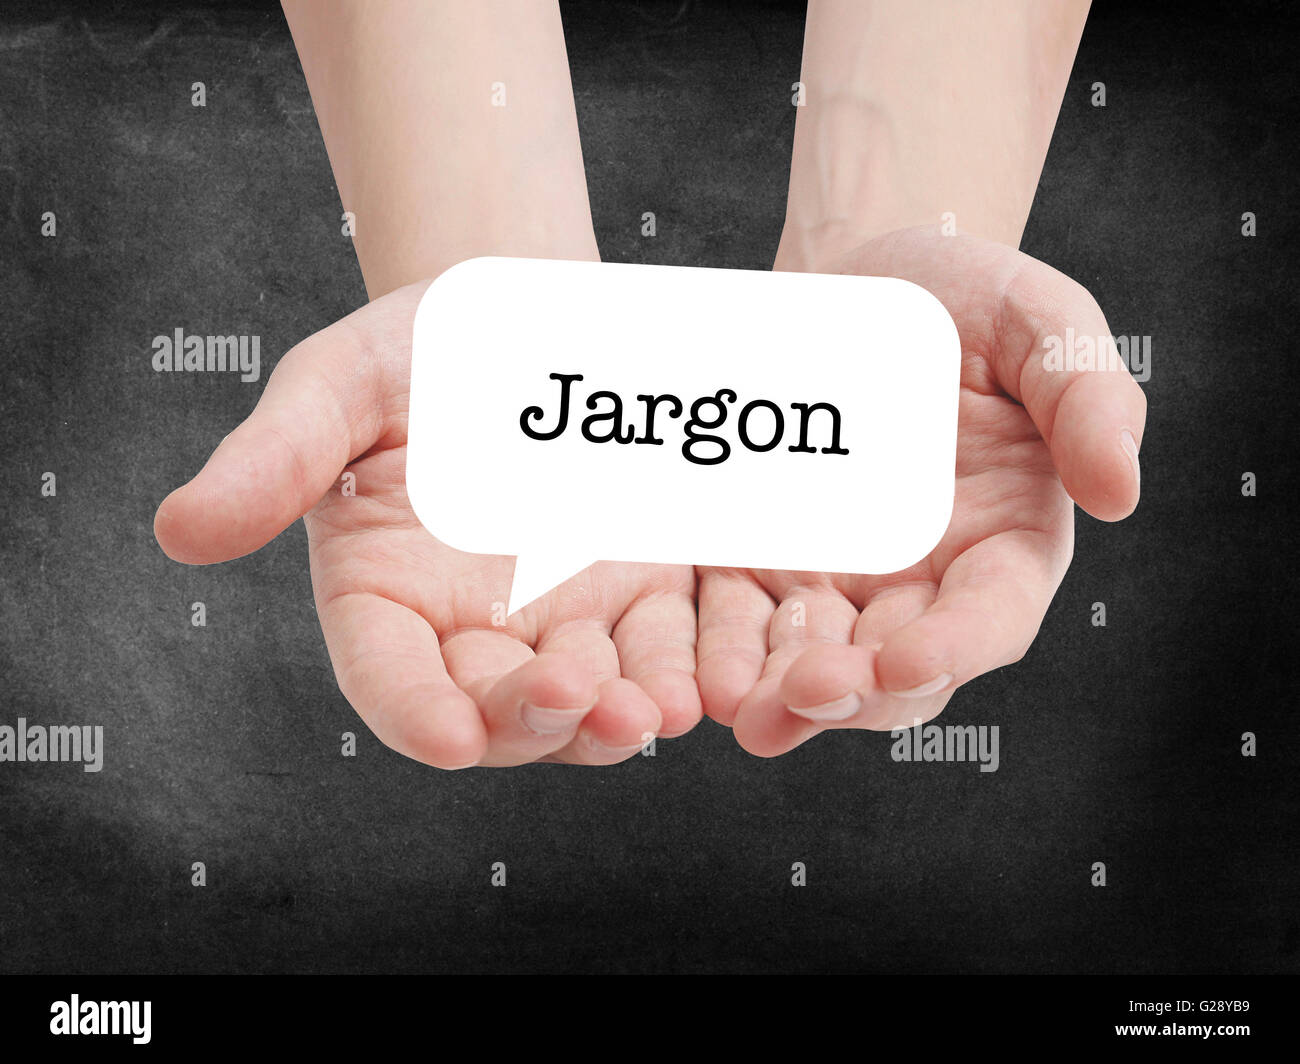 Jargon written on a speechbubble Stock Photo